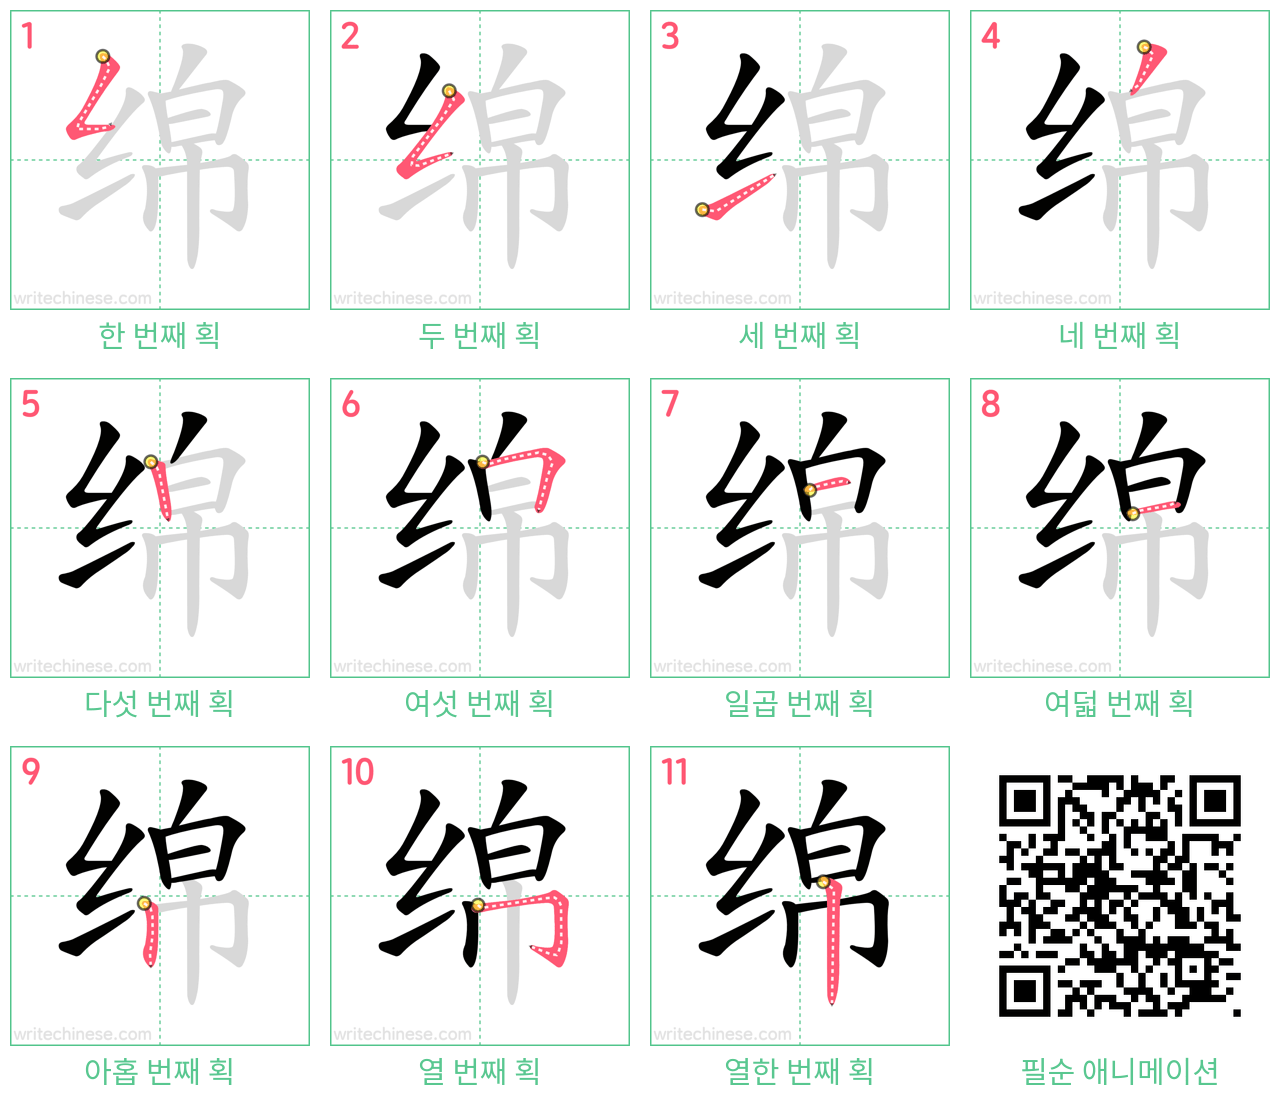 绵 step-by-step stroke order diagrams